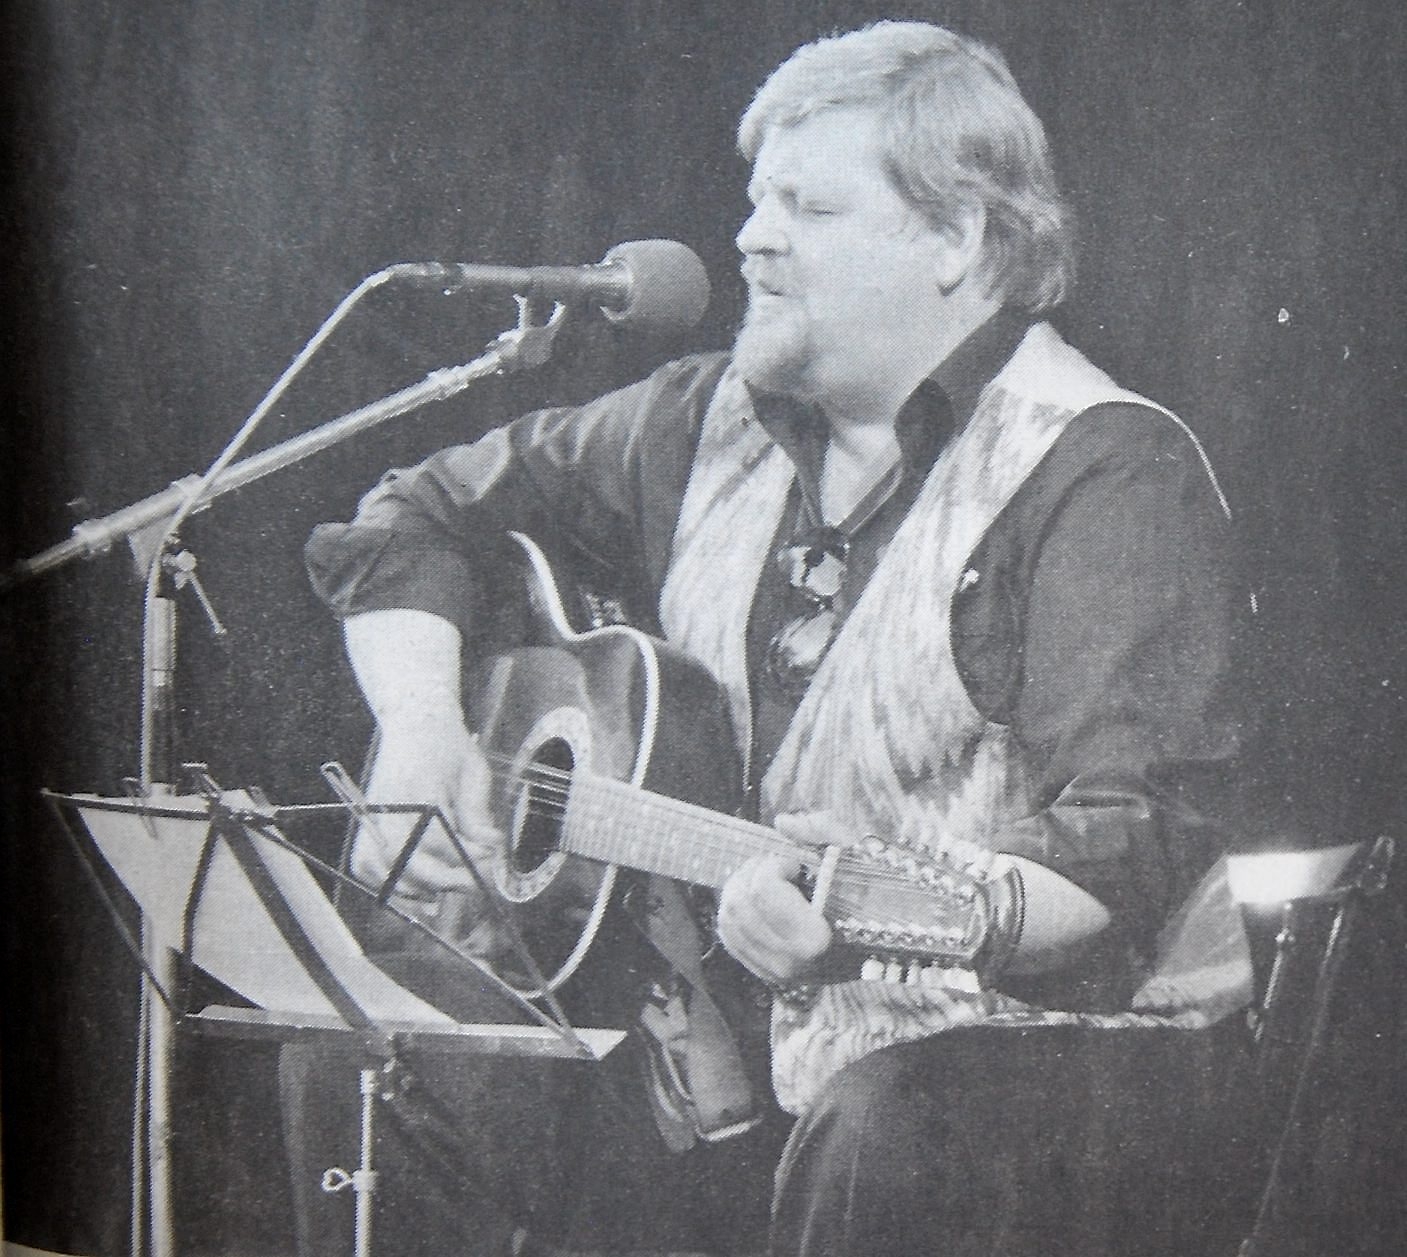 Staffan Percy ensam med en gitarr på scenen.
Arkiv: Mats Stålhammar